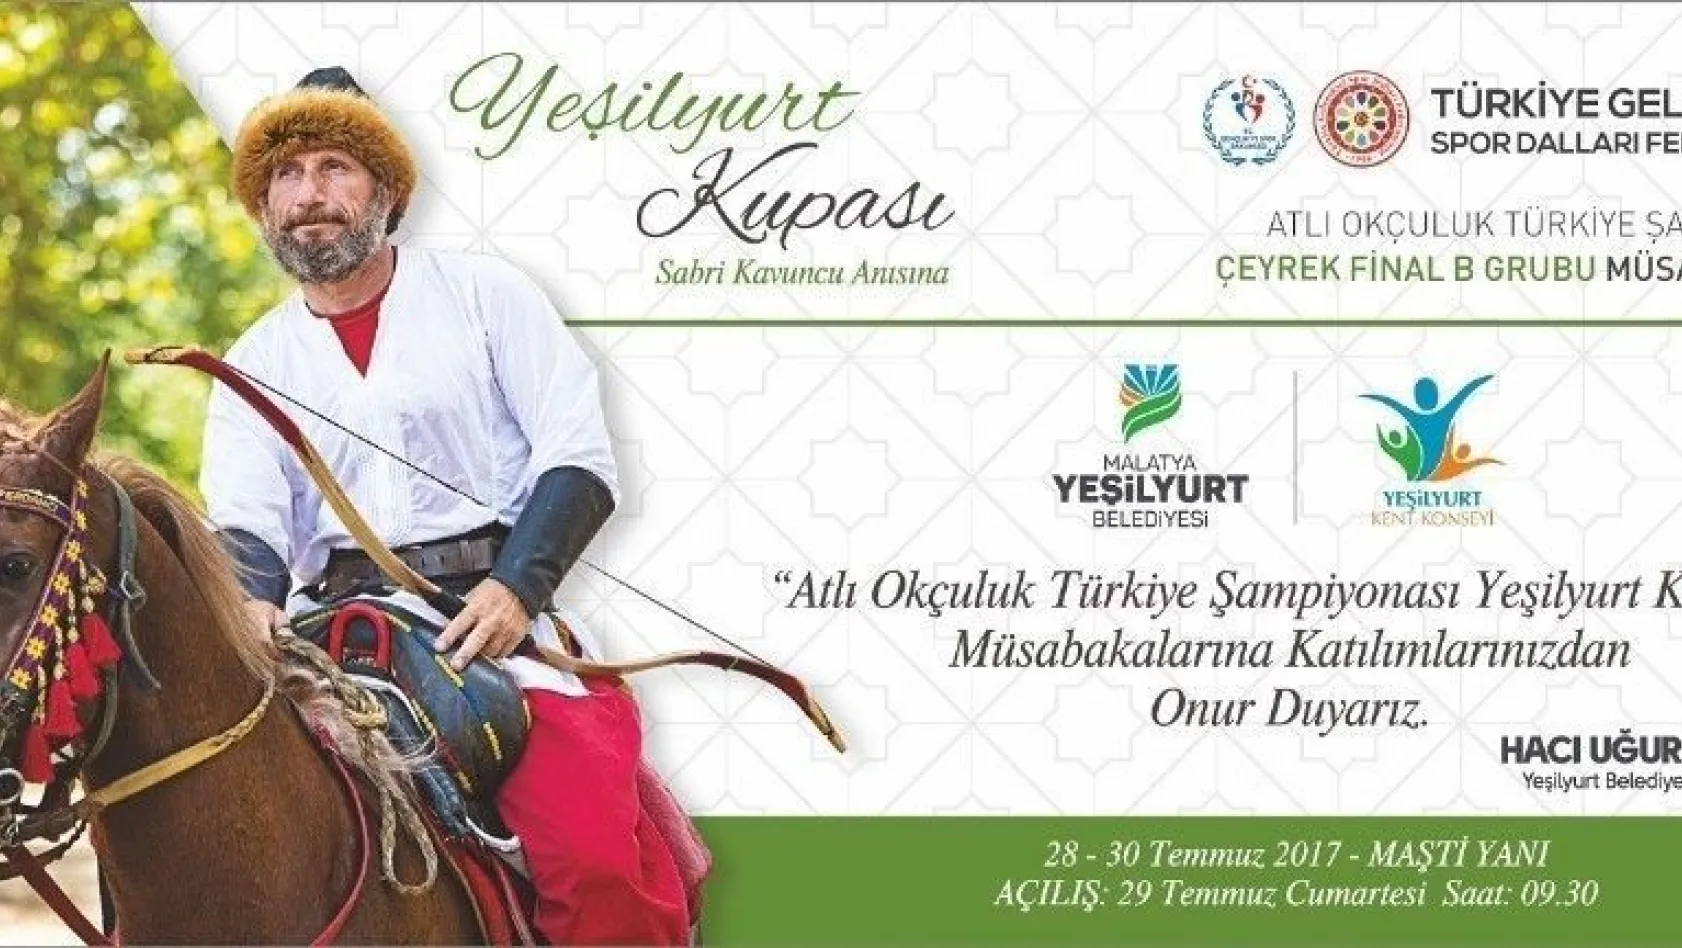 Atlı Okçuluk Türkiye Şampiyonası Çeyrek Final müsabakaları 28-30 Temmuz'da yapılacak
